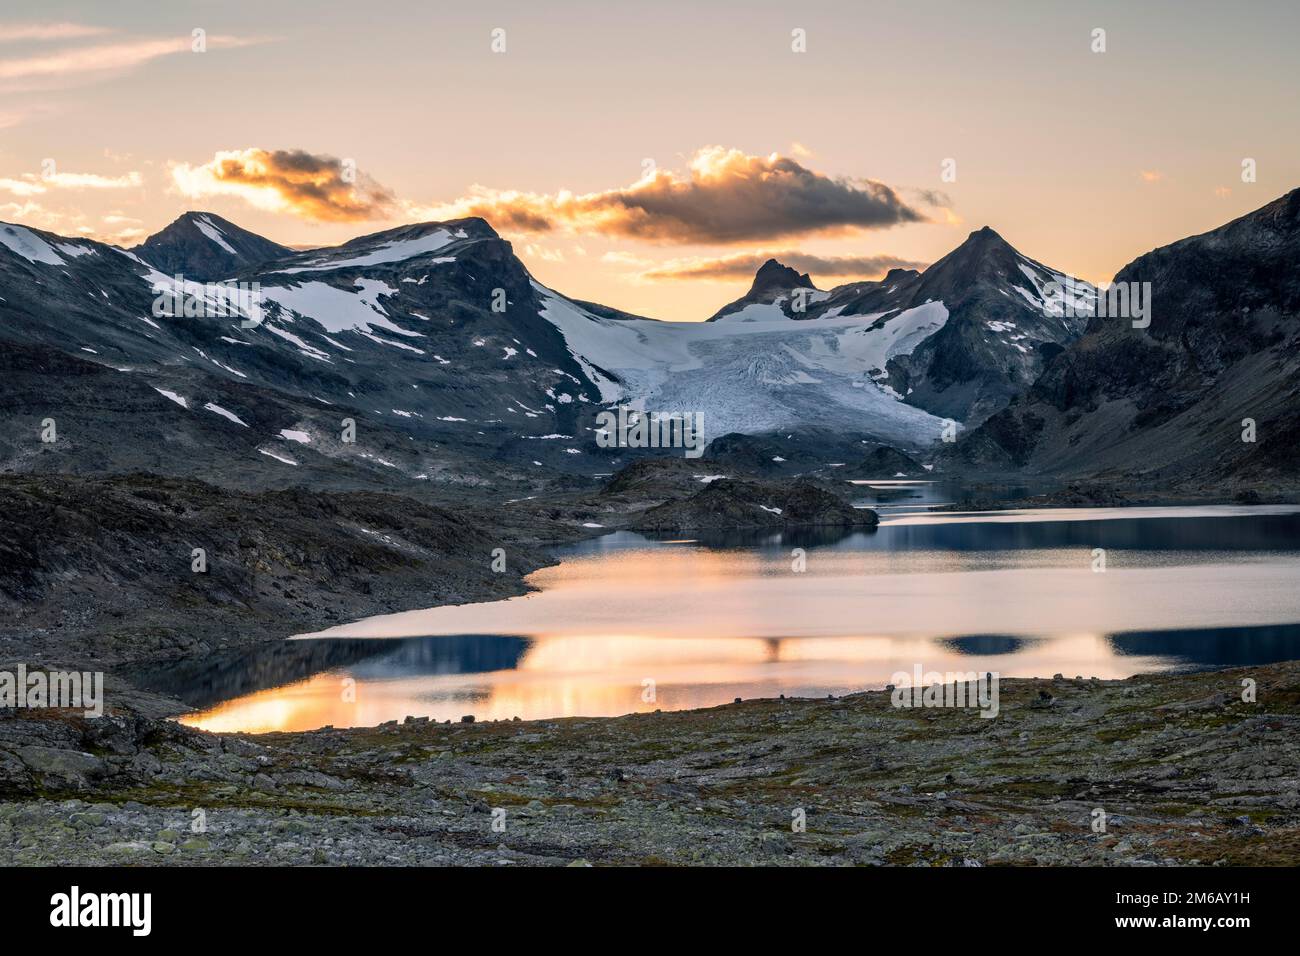 Lac Store Mjolkedalsvatnet avec glacier Mjolkedalsbreen, parc national de Jotunheimen, Norvège Banque D'Images